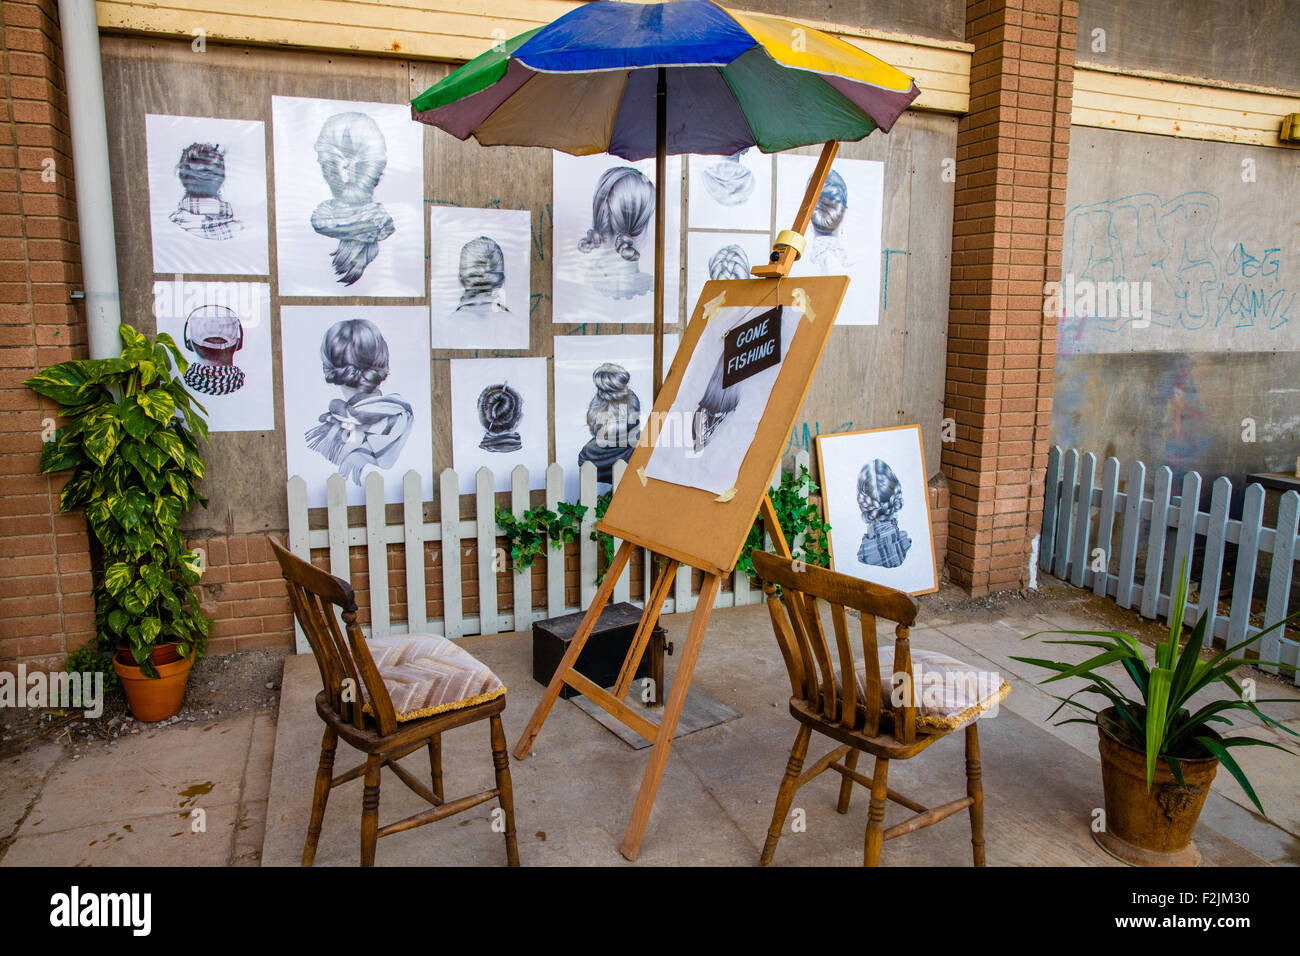 Künstler-Ecke von Dismaland Weston super Mare mit Bleistiftzeichnungen und eine Staffelei mit gegangen, um Mittagessen Ankündigung Stockfoto